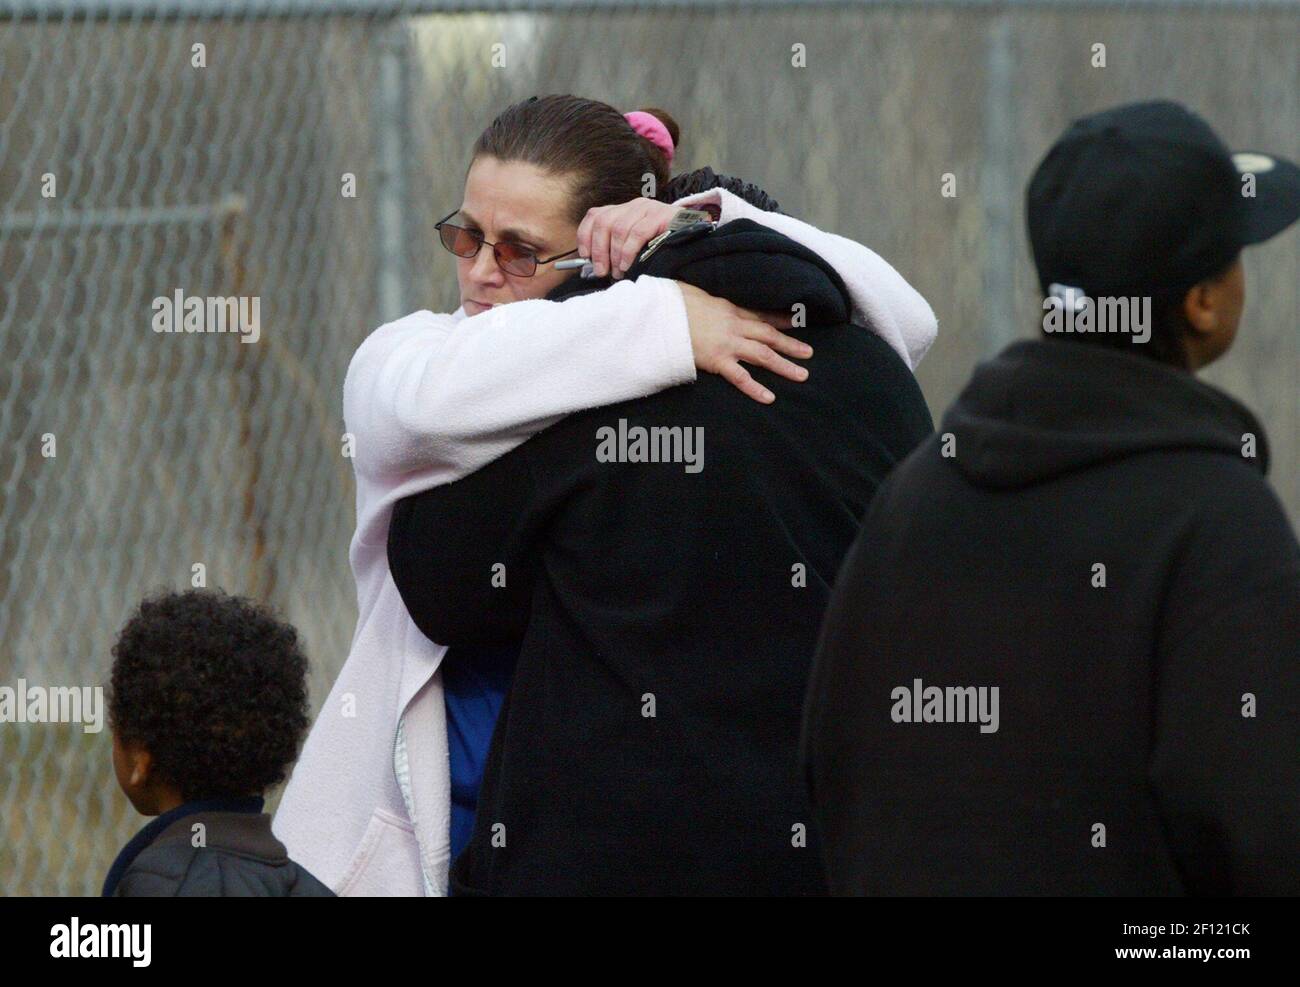 Kay Hernandez (izquierda) hugs co-trabajadora, Lisa Robinson, el sábado, 16 de diciembre de 2006, En Kansas City, Missouri, después de descubrir que su colega y amiga, Shanika King, había sido asesinado por su novio durante mucho tiempo. (Foto de Garvey Scott/Kansas City Star/MCT/Sipa USA) Foto de stock